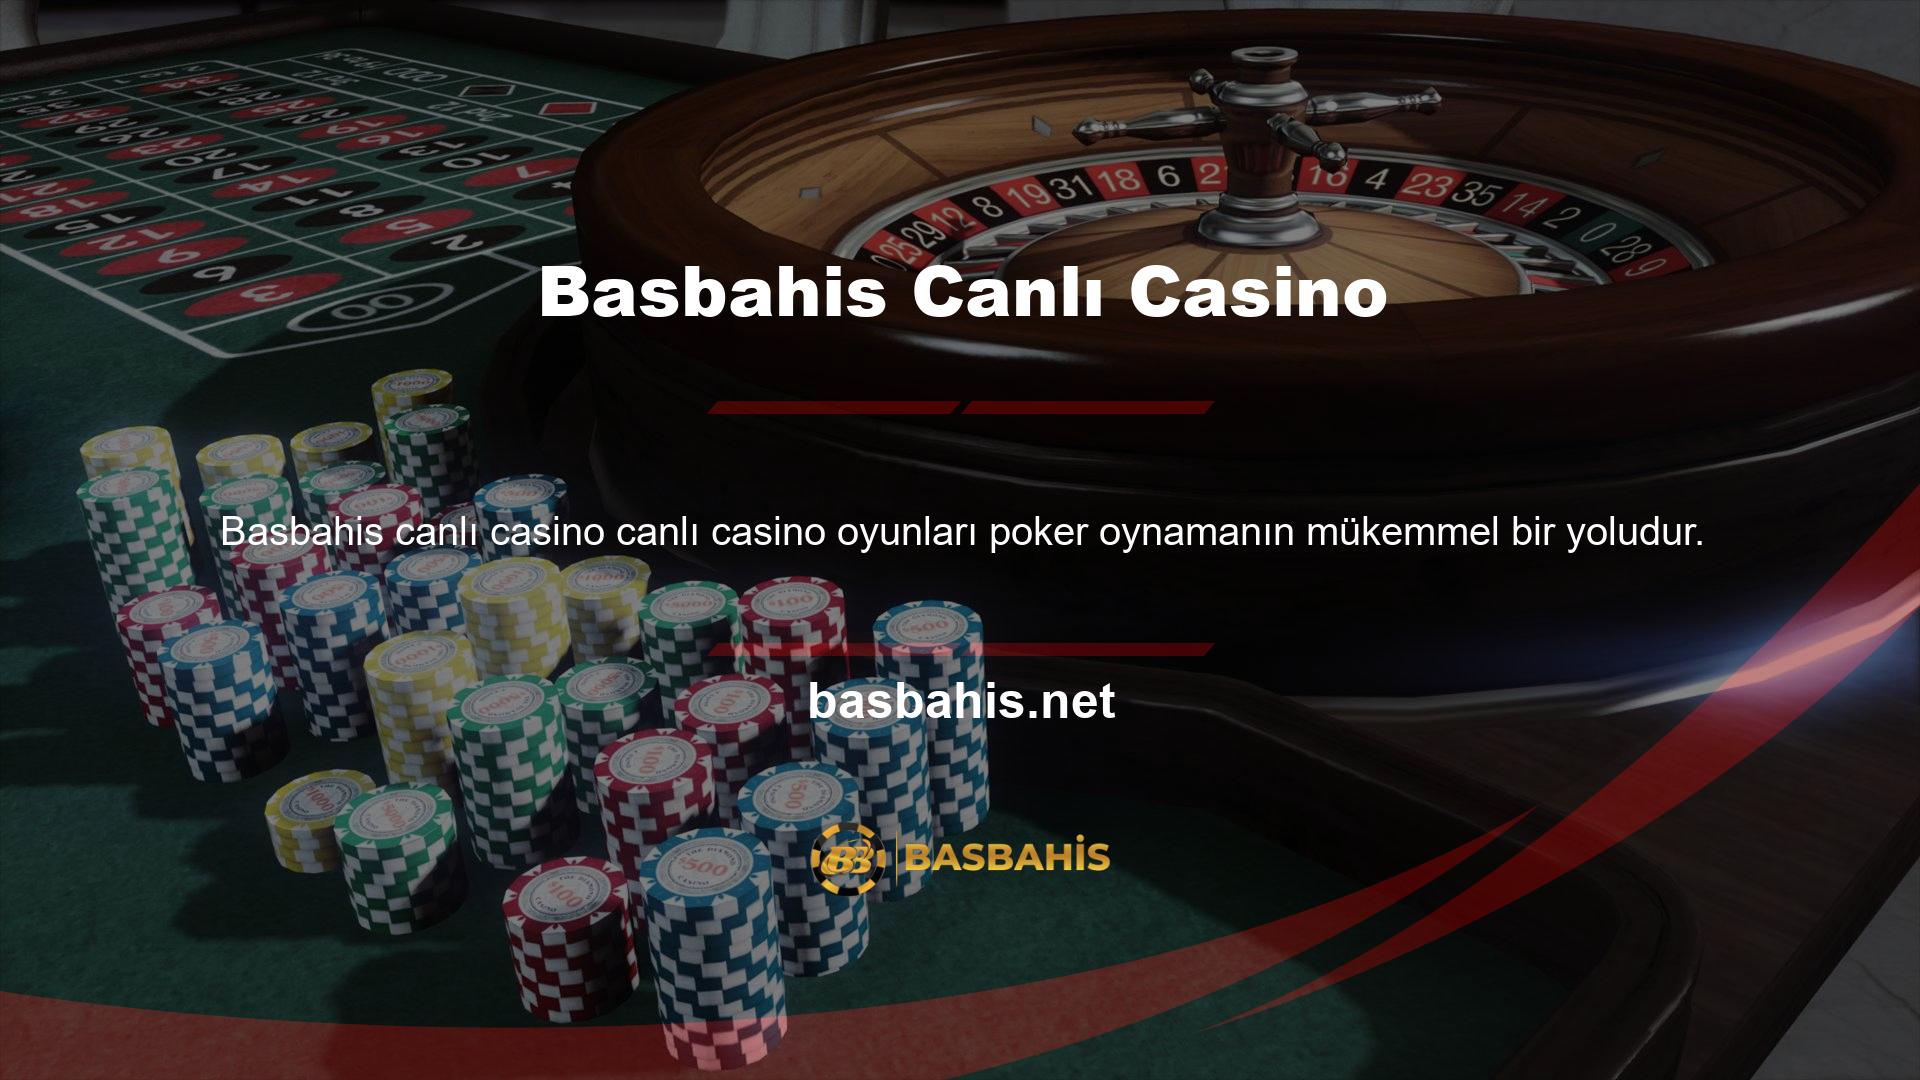 Çevrimiçi bahis sitelerindeki poker masaları gerçek bir casinoya benzer